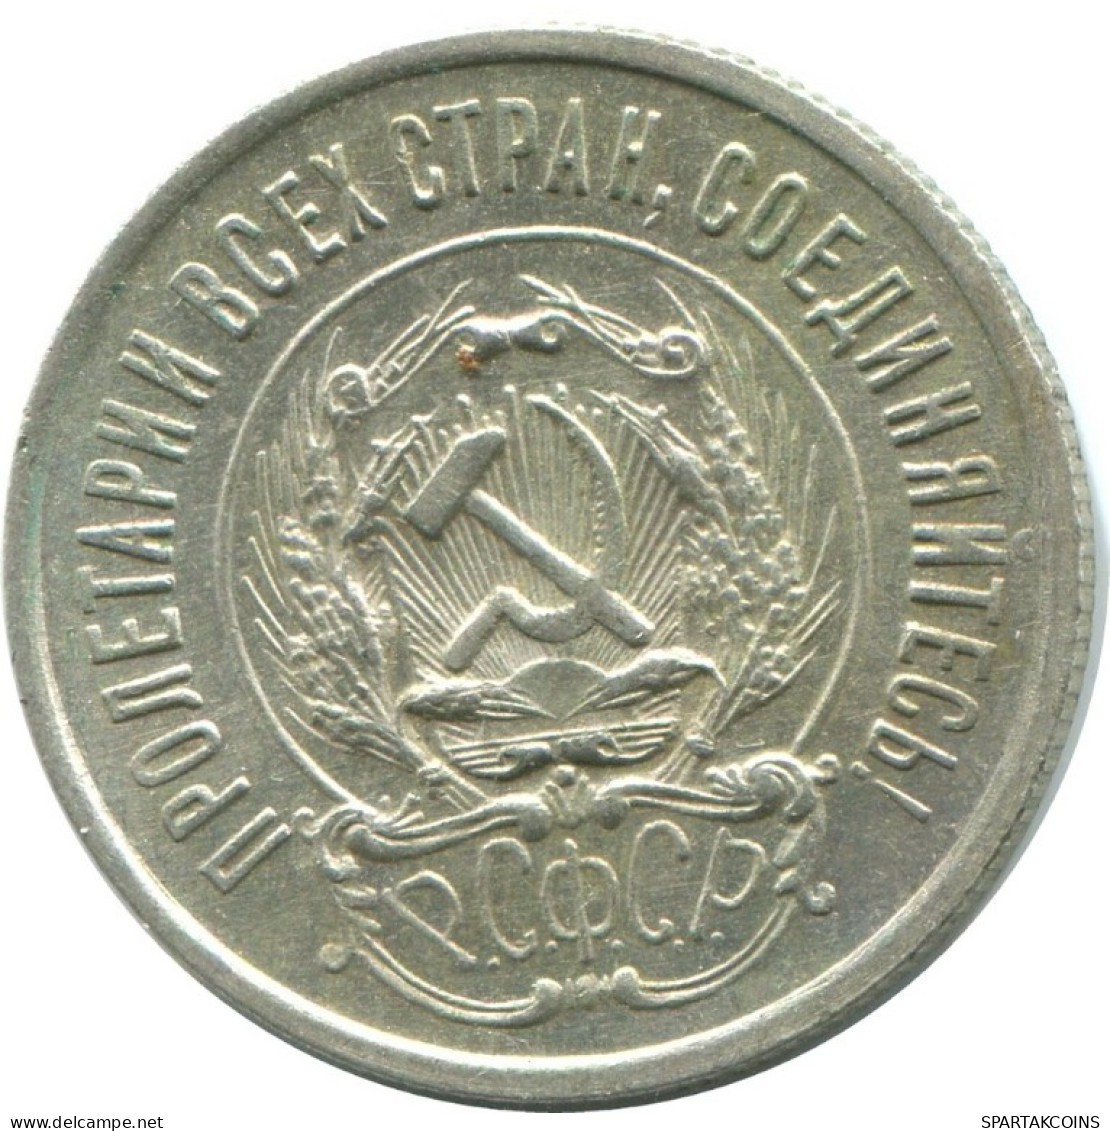 20 KOPEKS 1923 RUSSLAND RUSSIA RSFSR SILBER Münze HIGH GRADE #AF711.D.A - Rusia